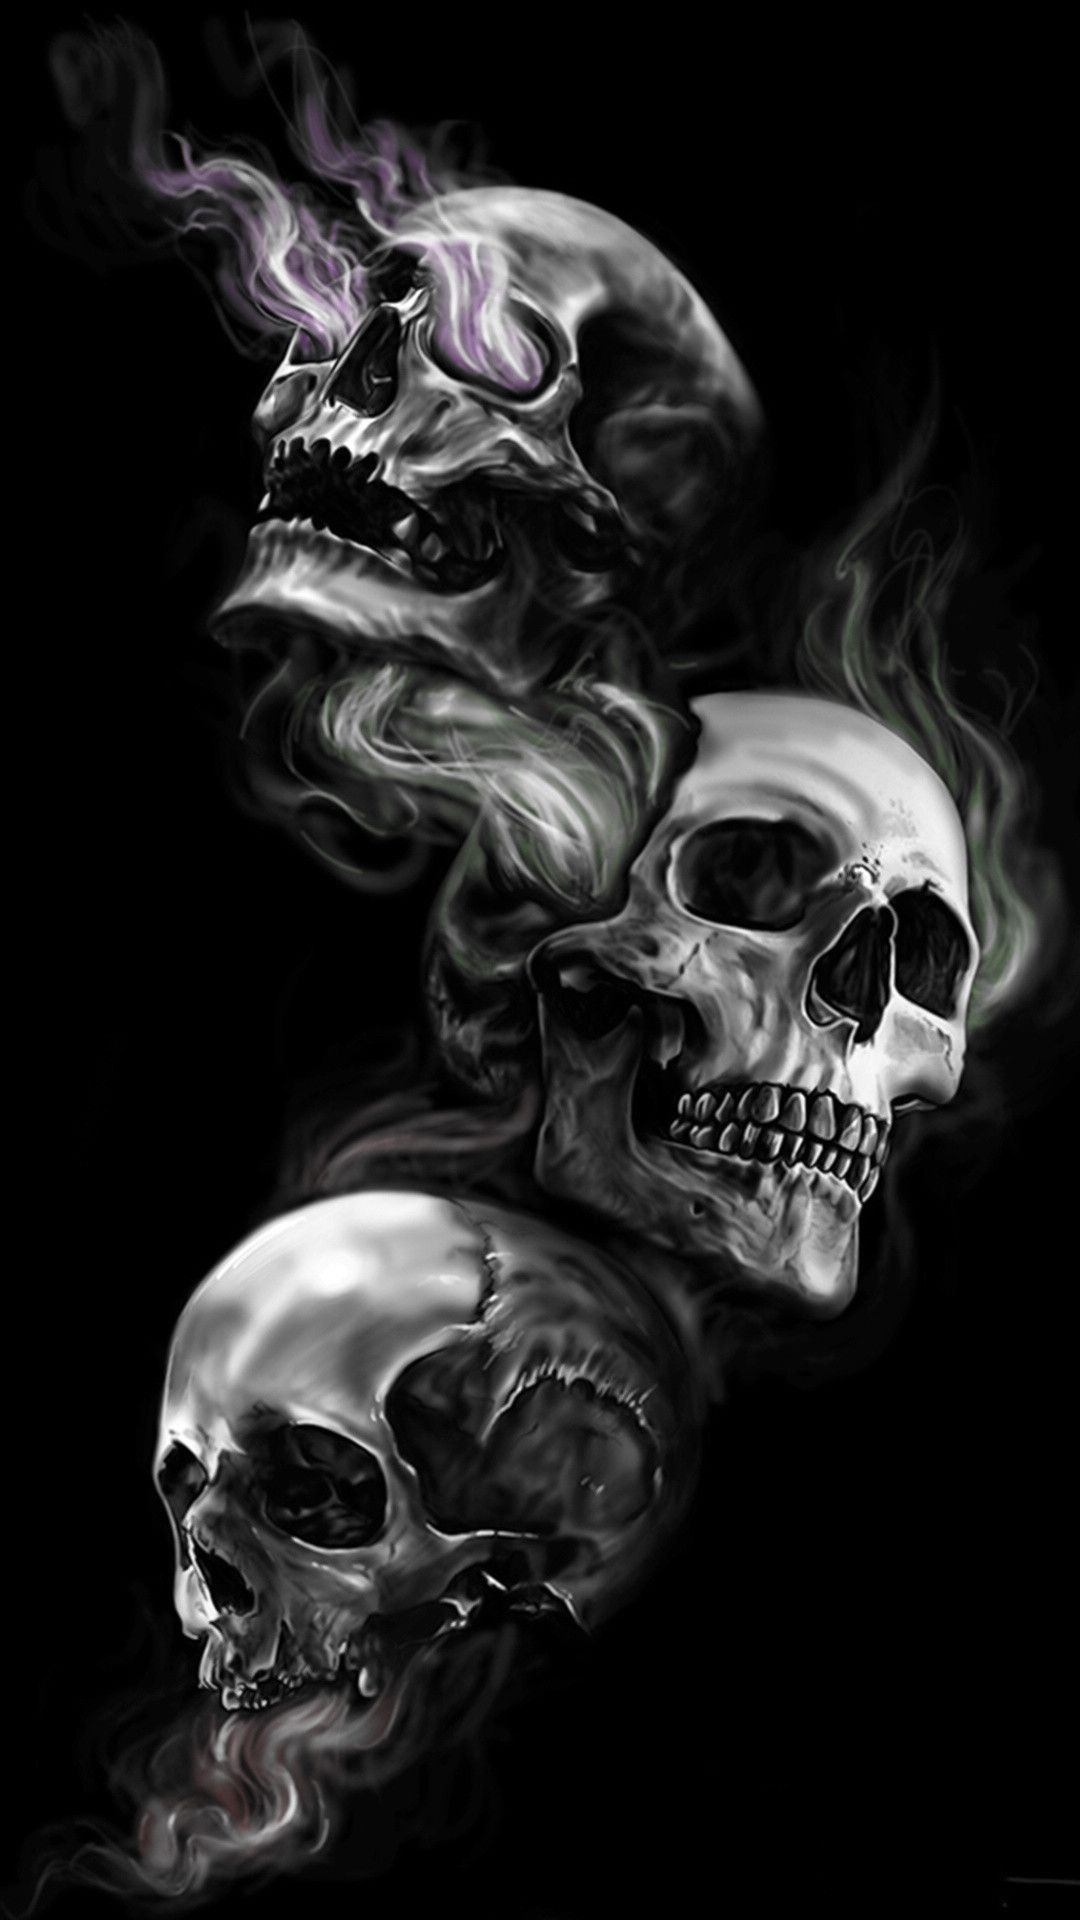 Dark skull evil horror skulls art artwork skeleton d wallpaper  5300x2981   694305  Skull wallpaper Hd skull wallpapers Skull art